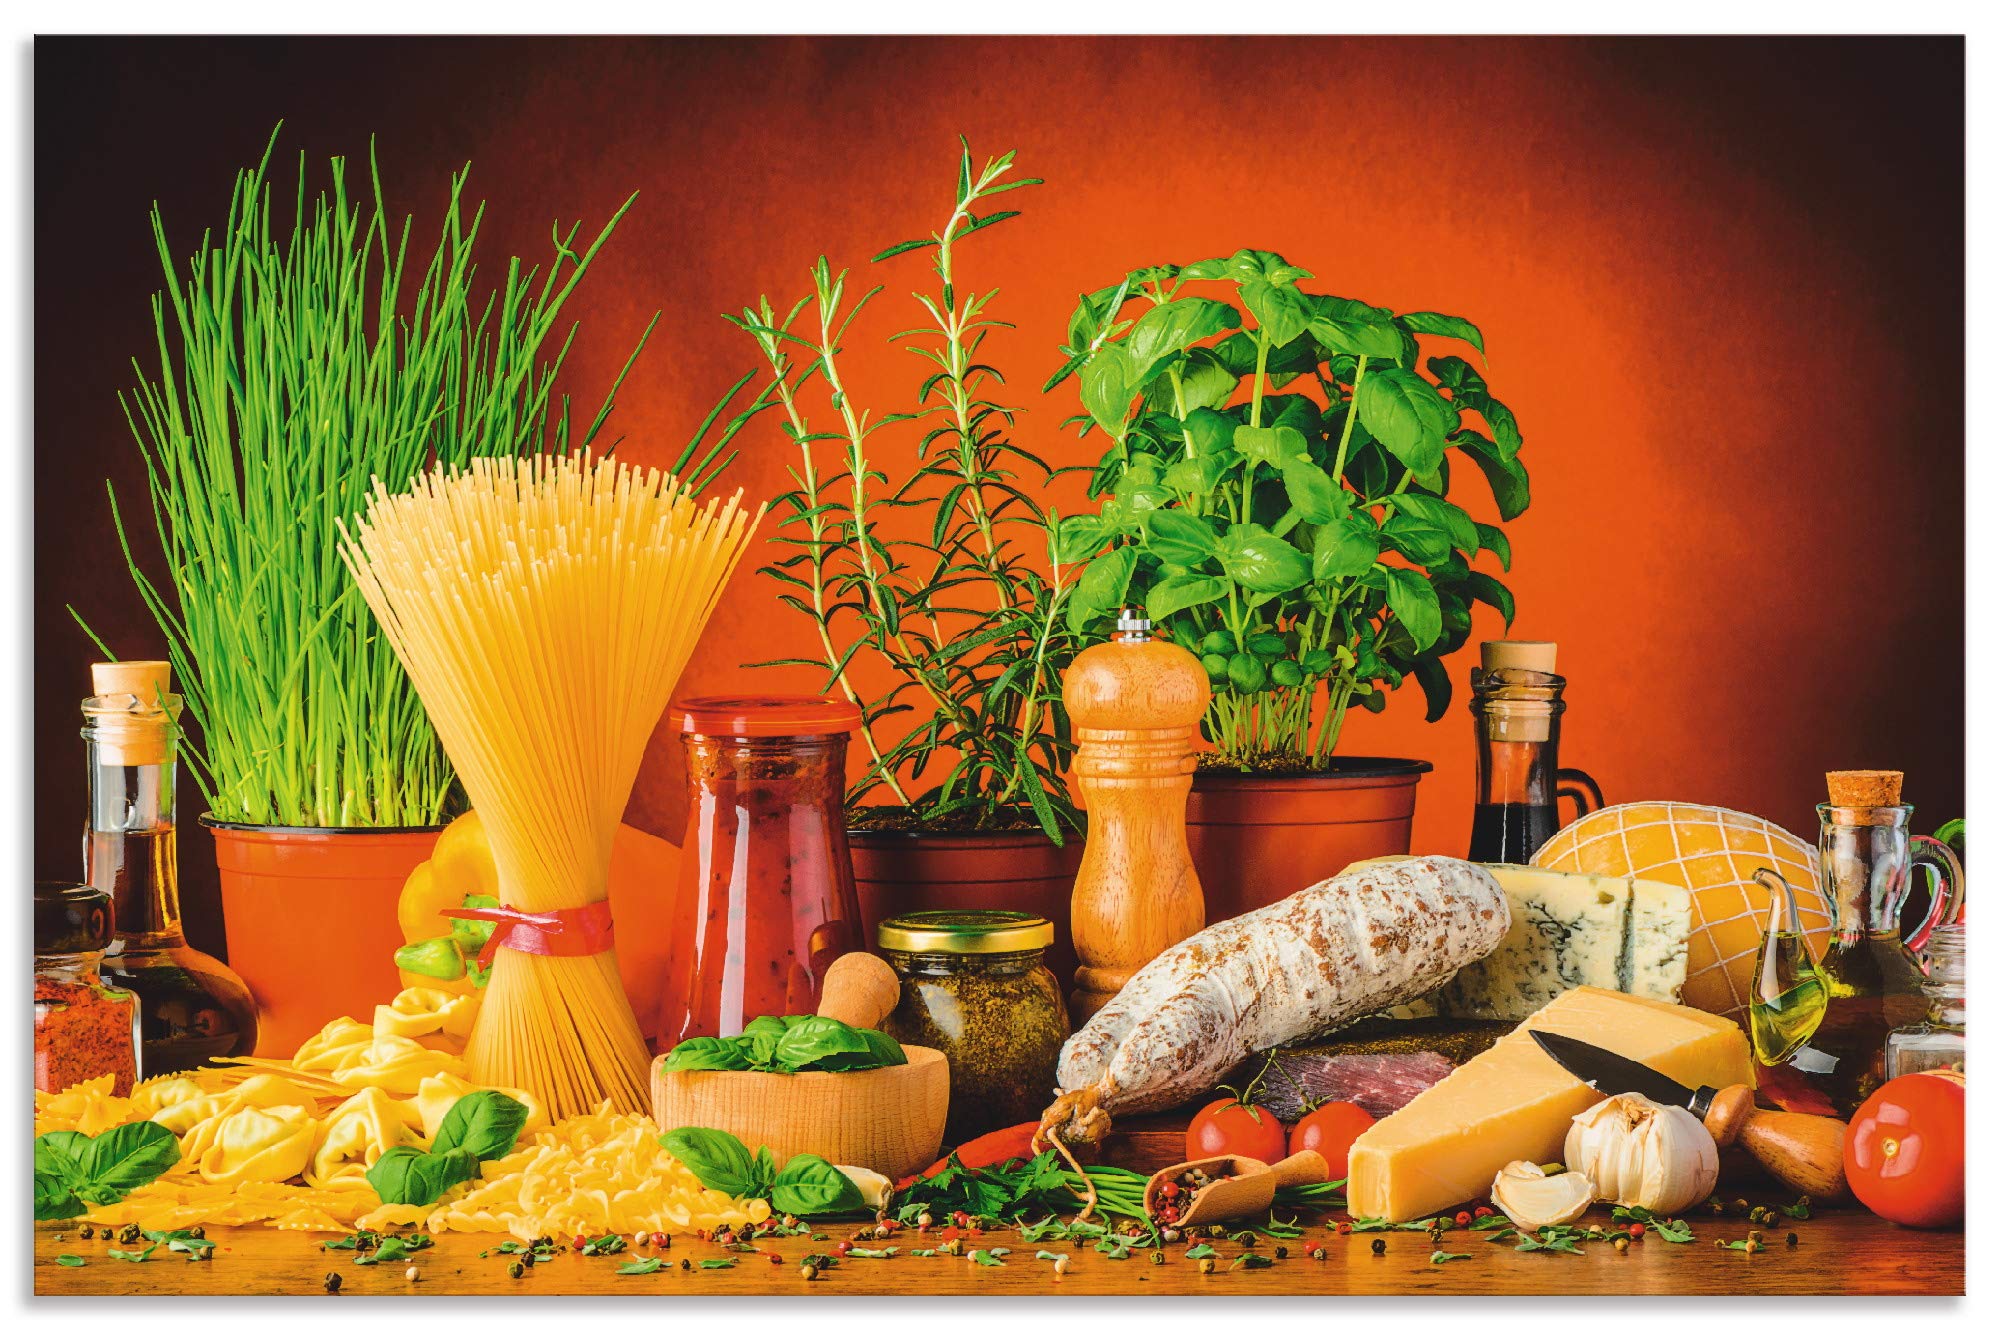 ARTland Spritzschutz Küche aus Alu für Herd Spüle 100x65 cm (BxH) Küchenrückwand mit Motiv Essen Lebensmittel Gemüse Kunst Mediterran Italienisch Bunt S7SM